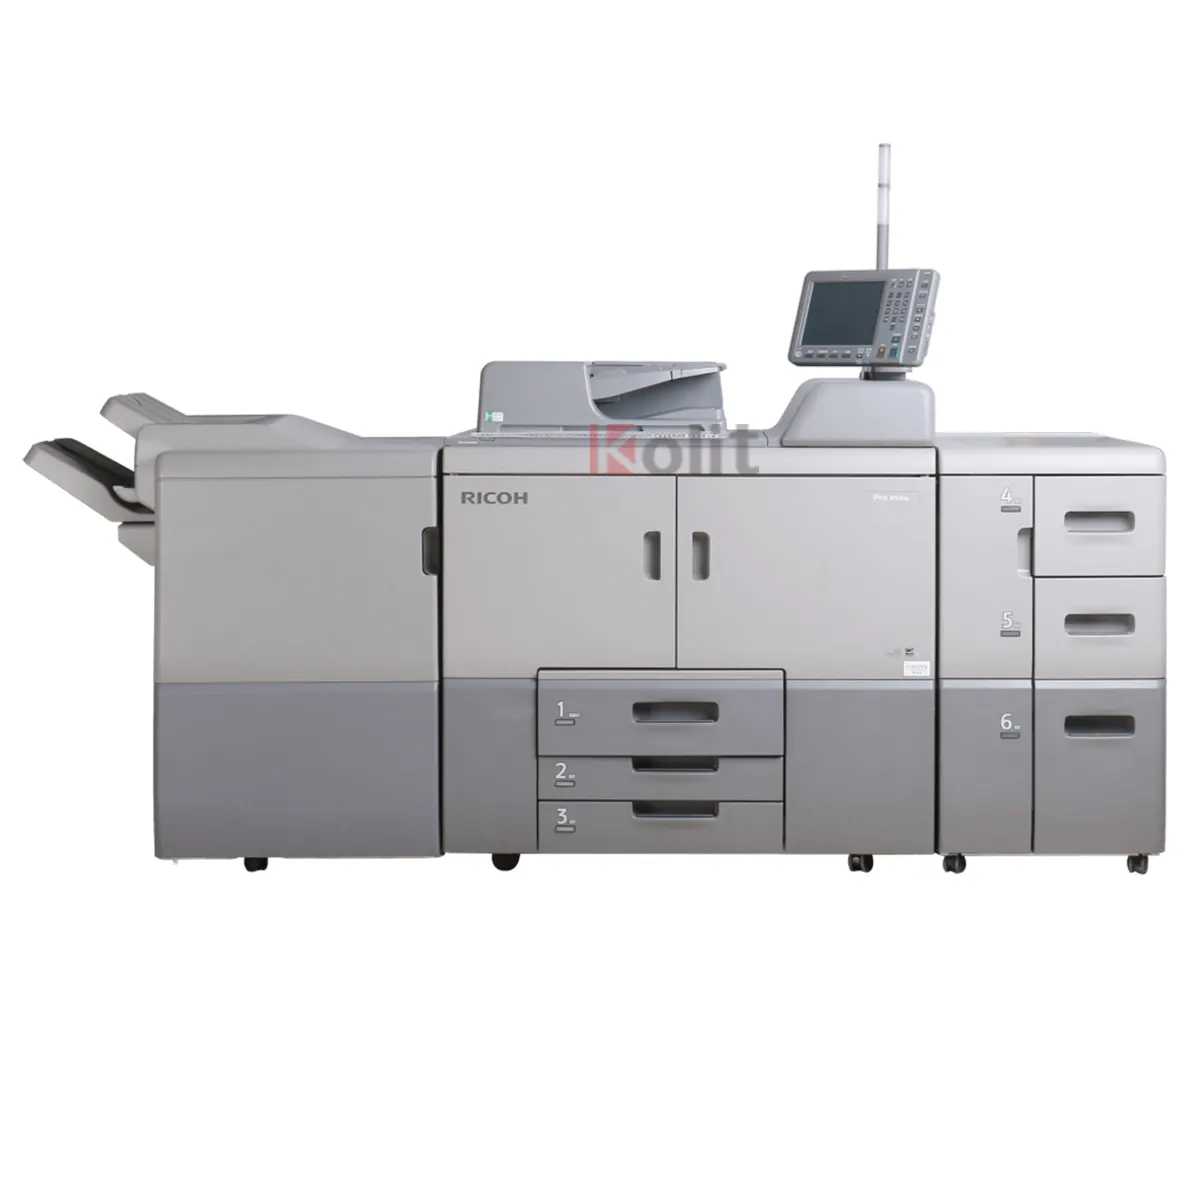 Werkspreis Gut nachgefertigter monochrom-drucker scanner Kopierer Pro 8100 B&W Fotokopierer Maschine für Ricoh Pro 8110